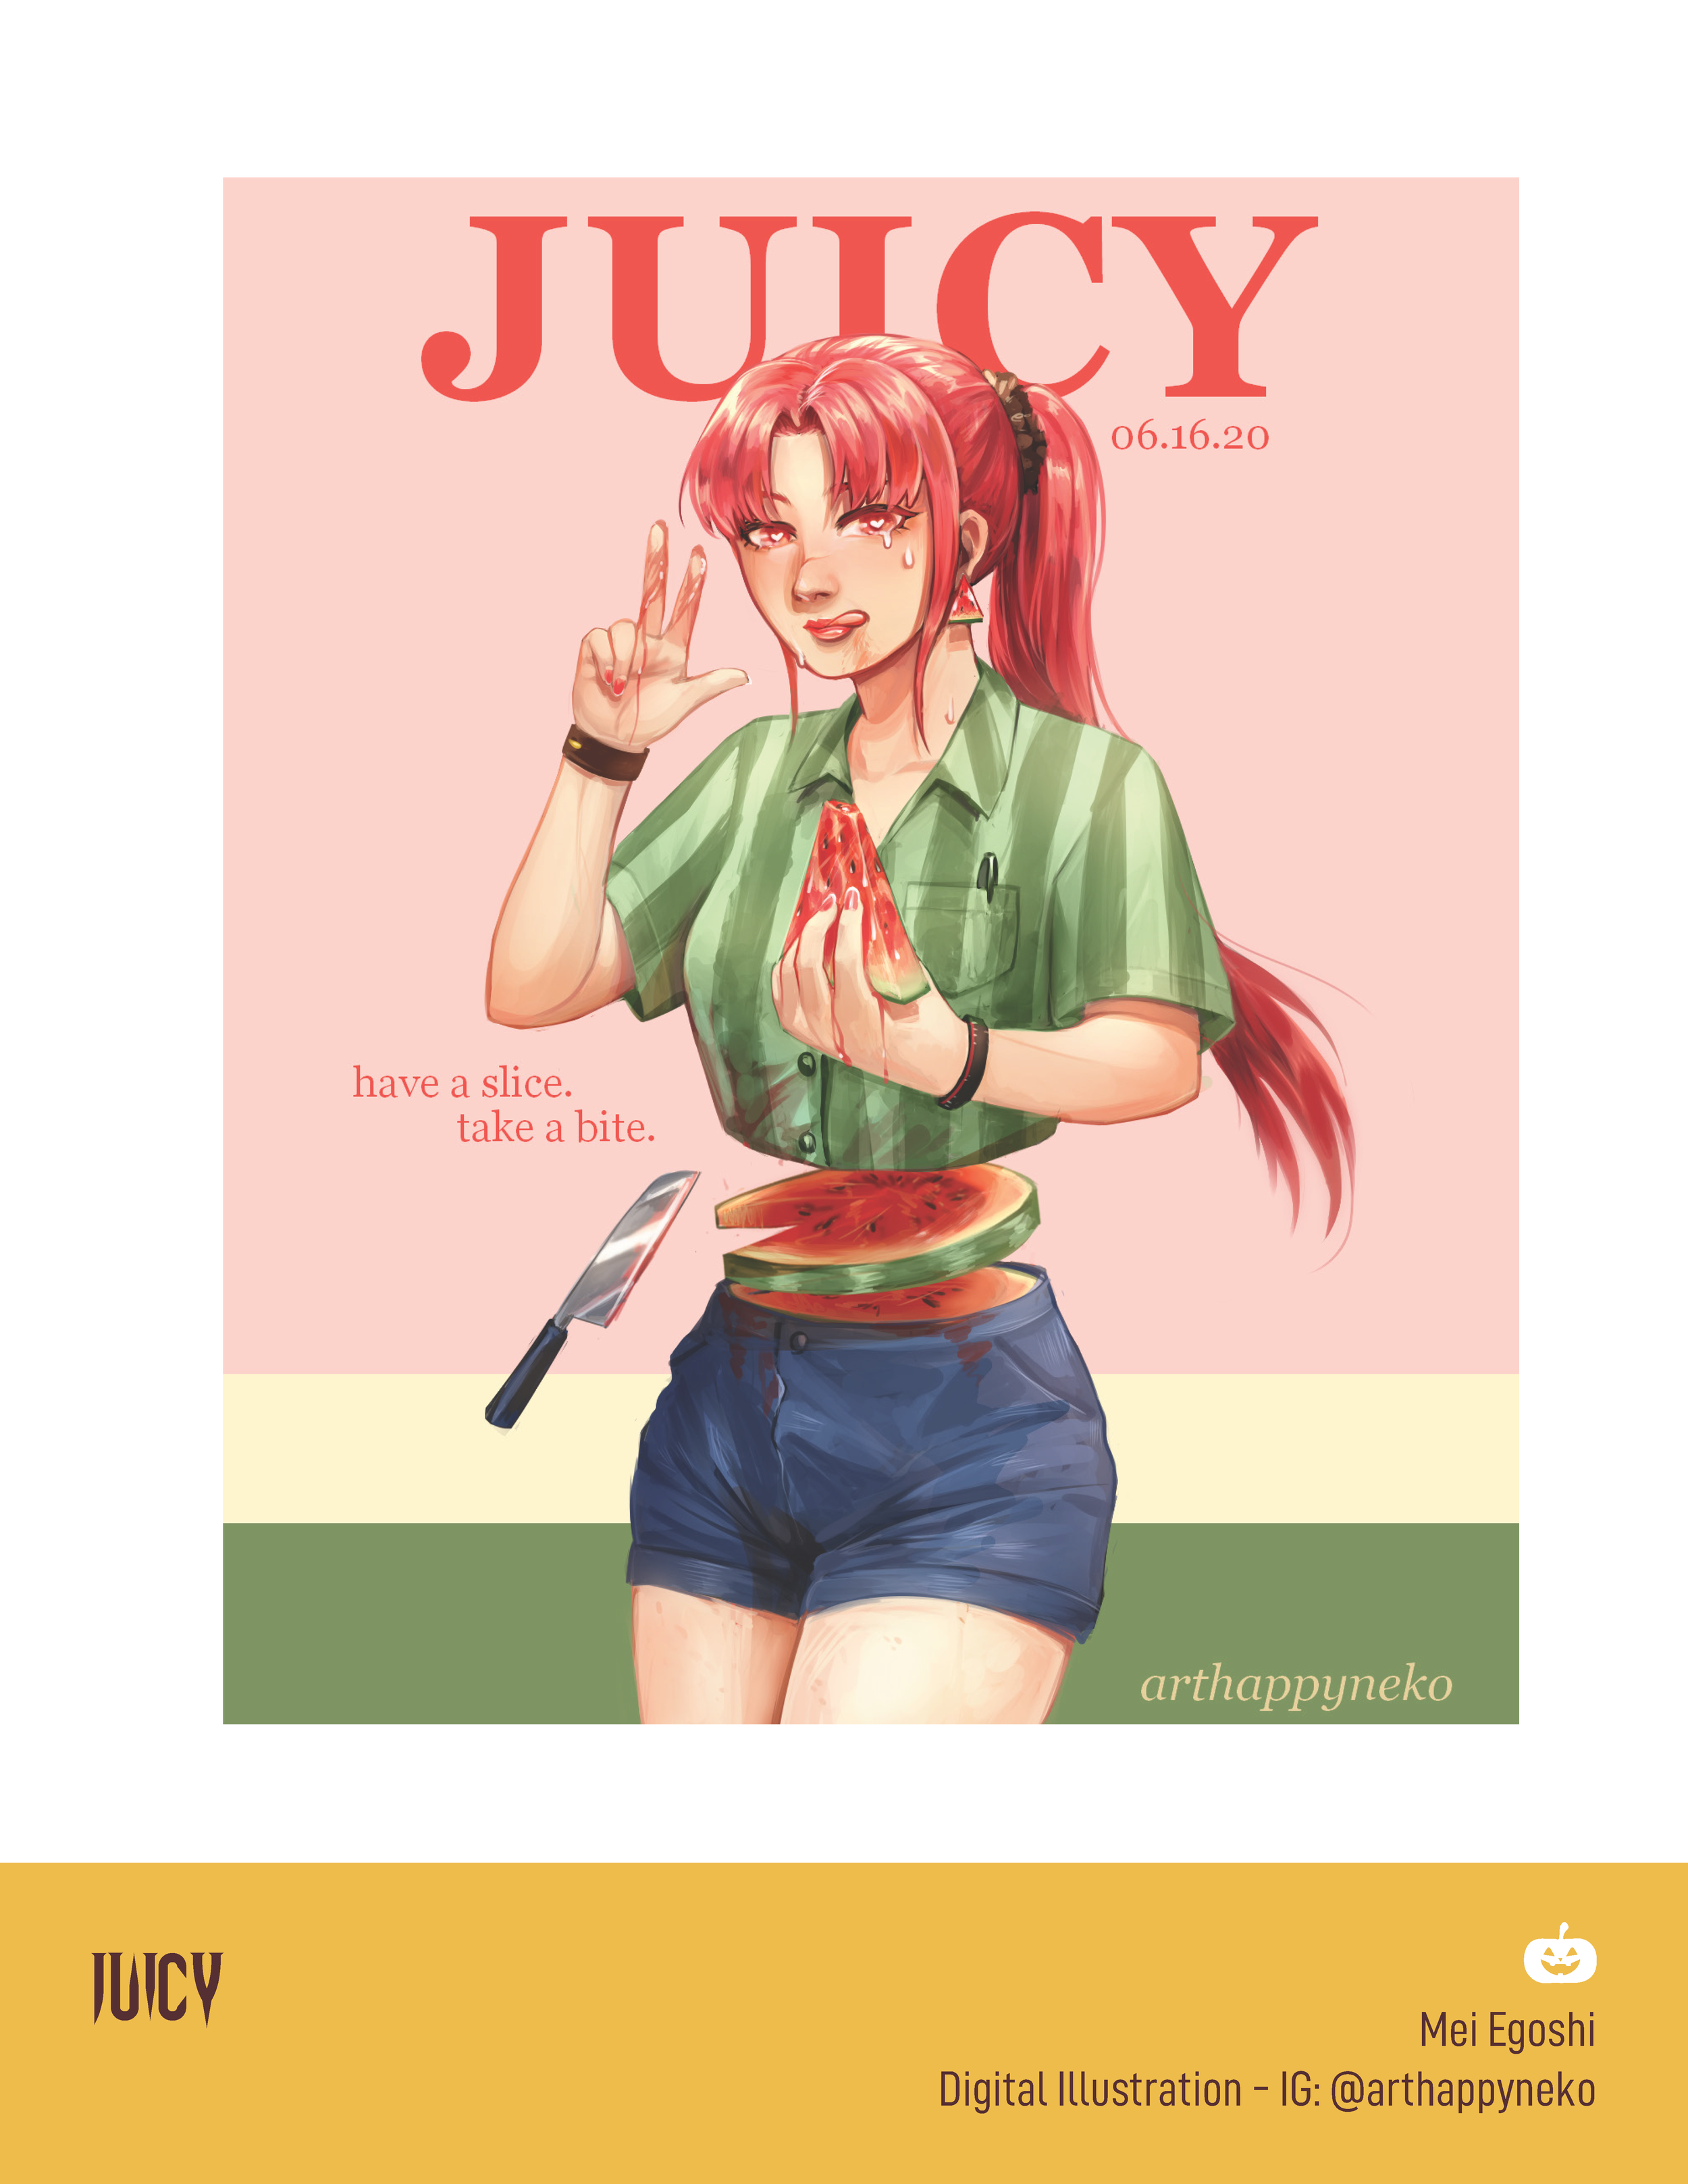 Juicy by Mei Egoshi